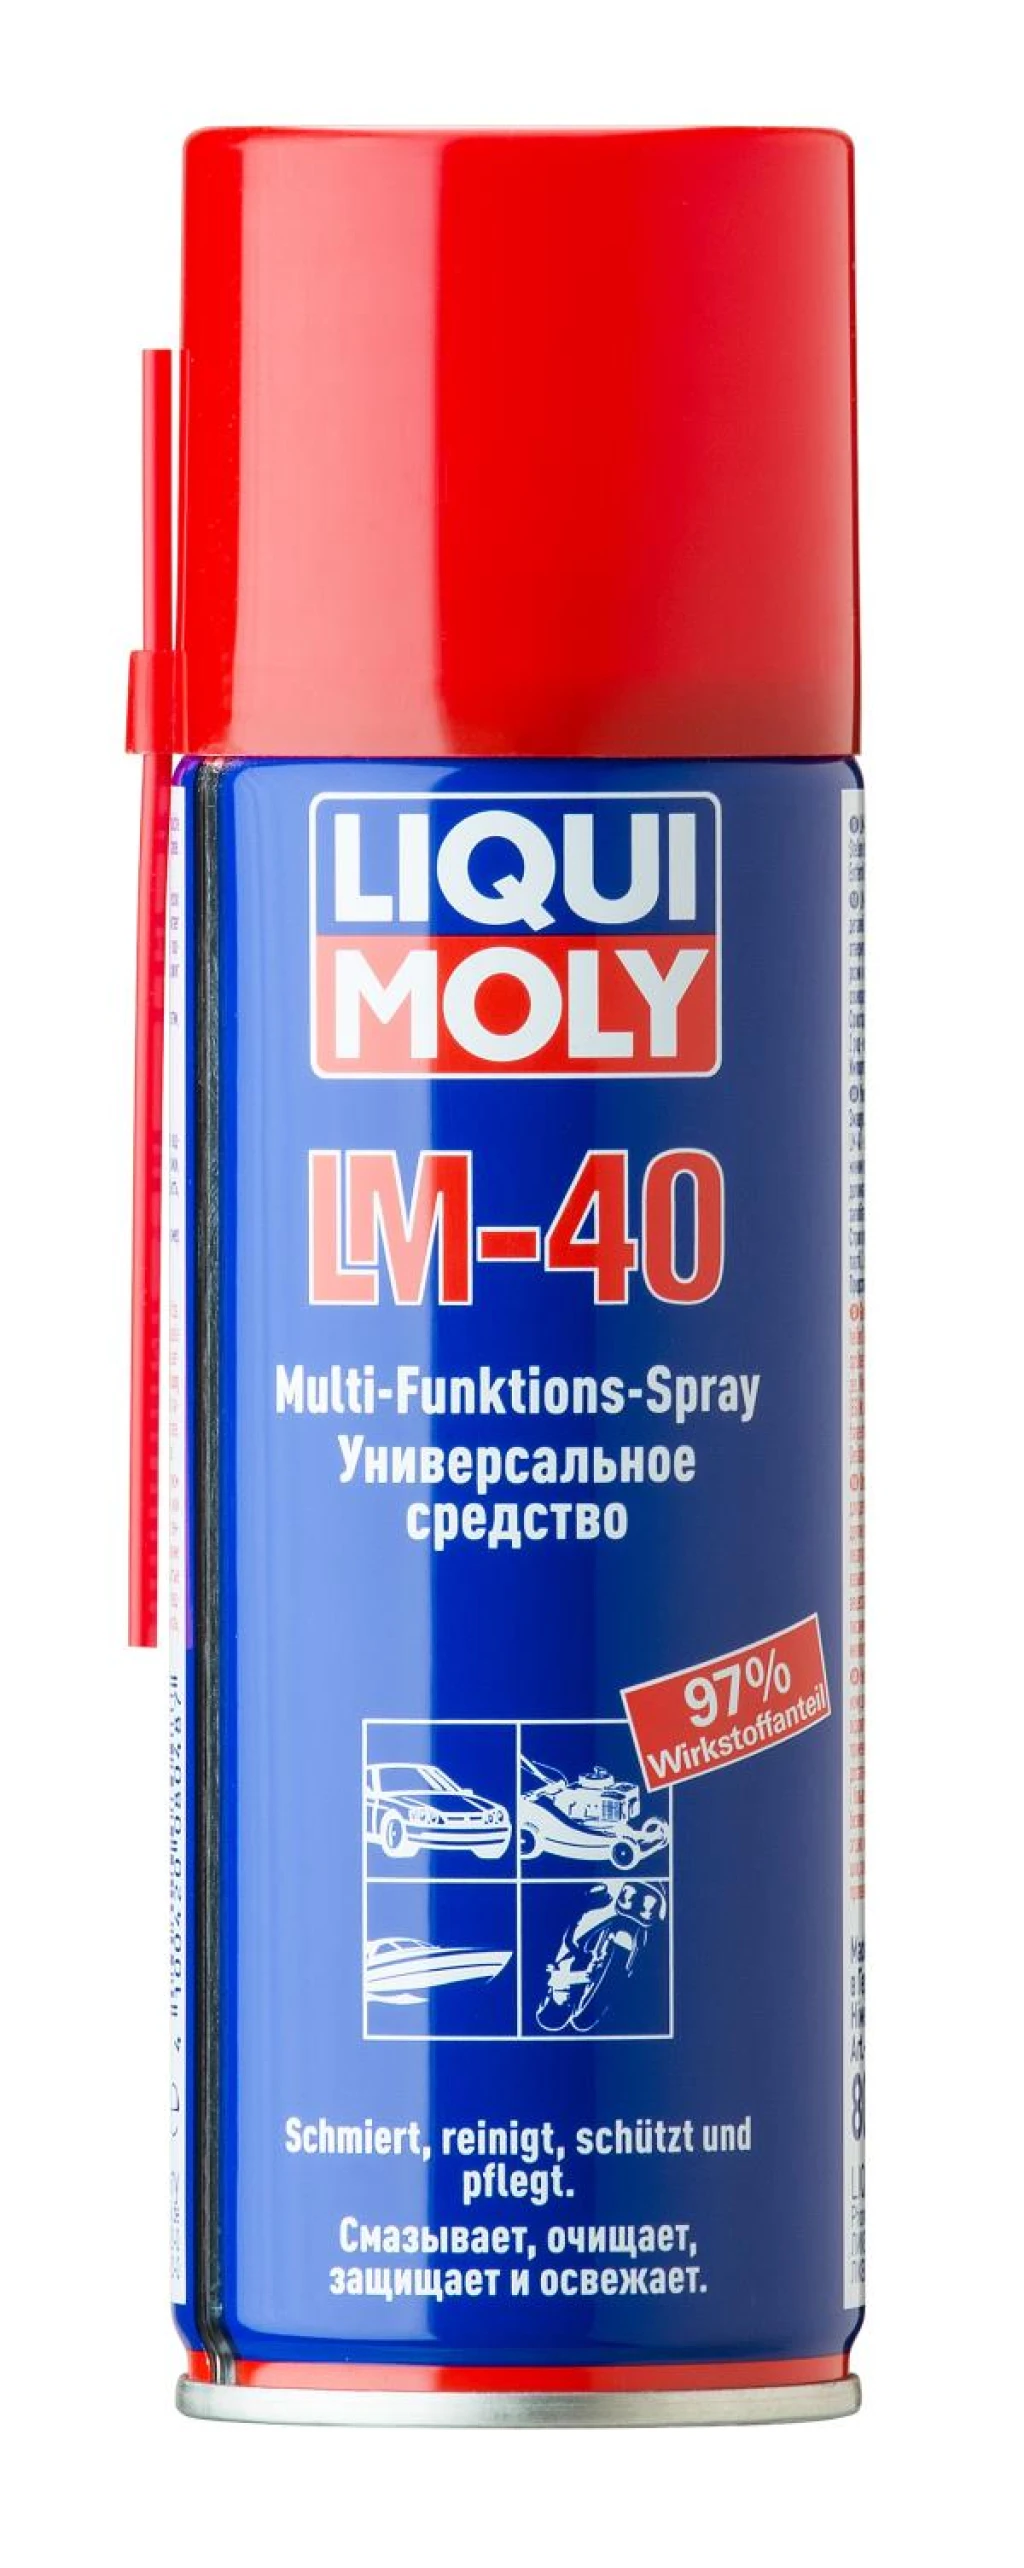 Смазка многофункциональная Liqui Moly LM 40 Multi-Funktions-Spray аэрозоль 200 мл